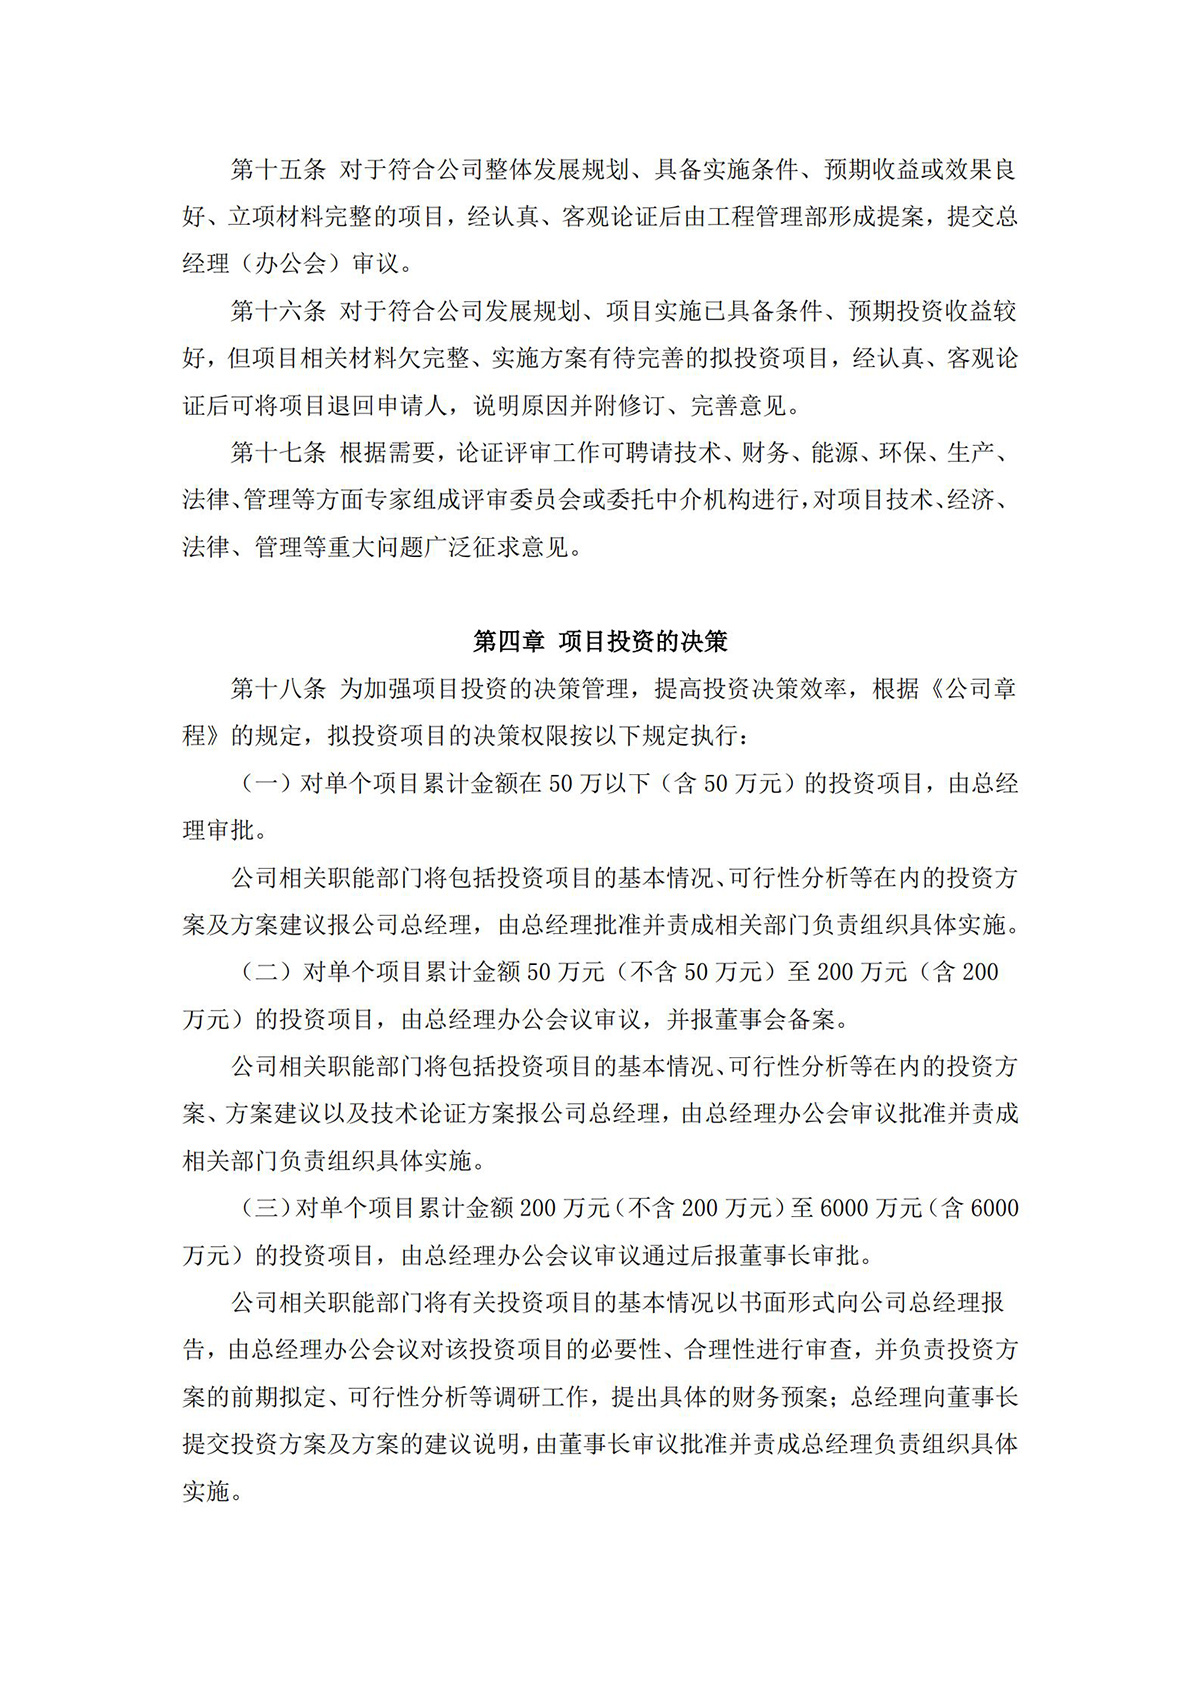 河南金丹乳酸科技股份有限公司